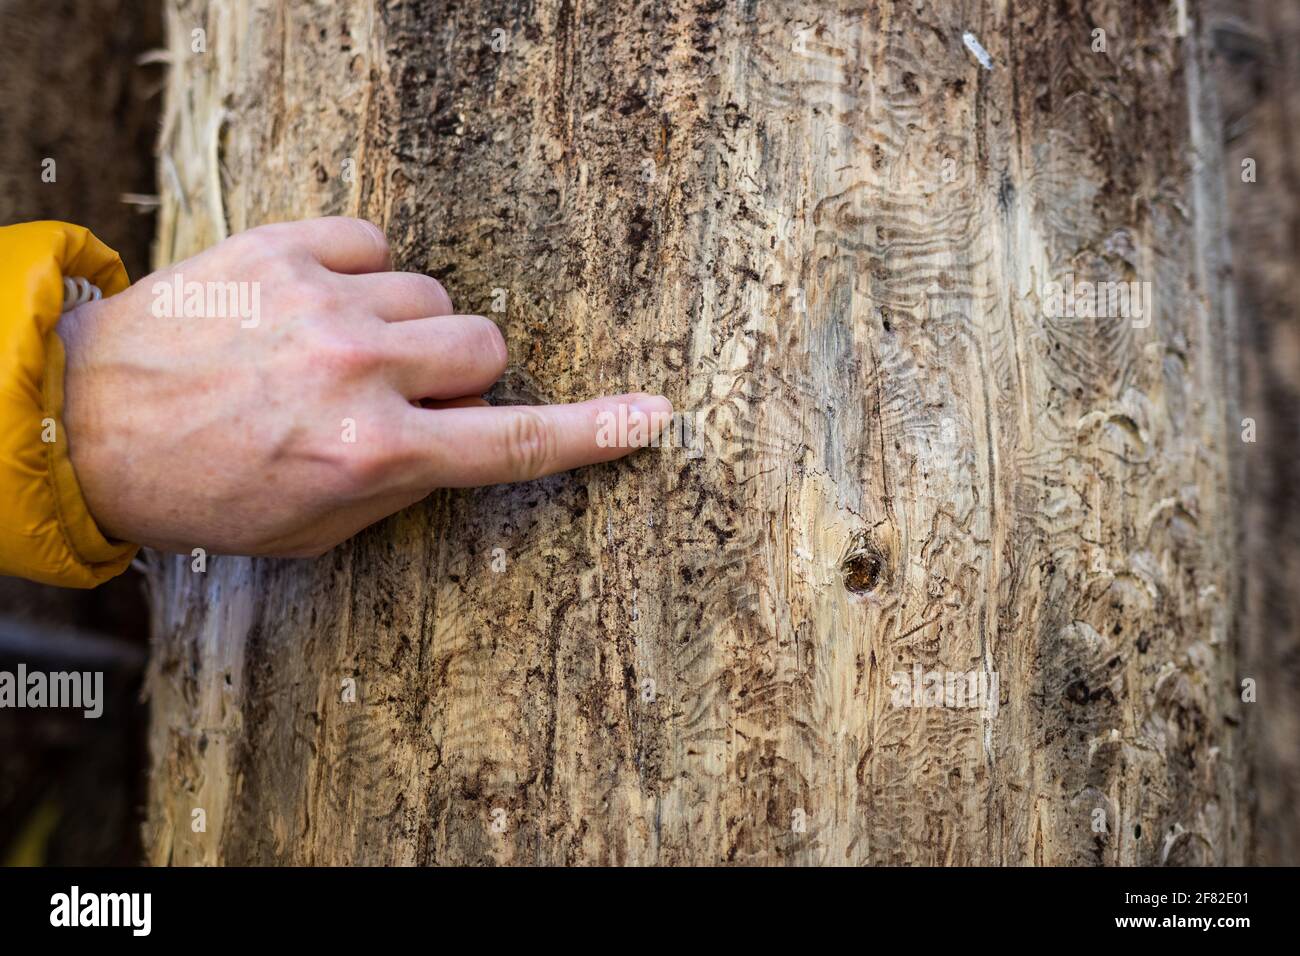 Förster zeigt den Finger auf ein Muster vom Rindenkäfer (IPS typographius) am Baumstamm. Weibliche Hand, die durch Schädlinge auf Pflanzenrinde beschädigt ist Stockfoto